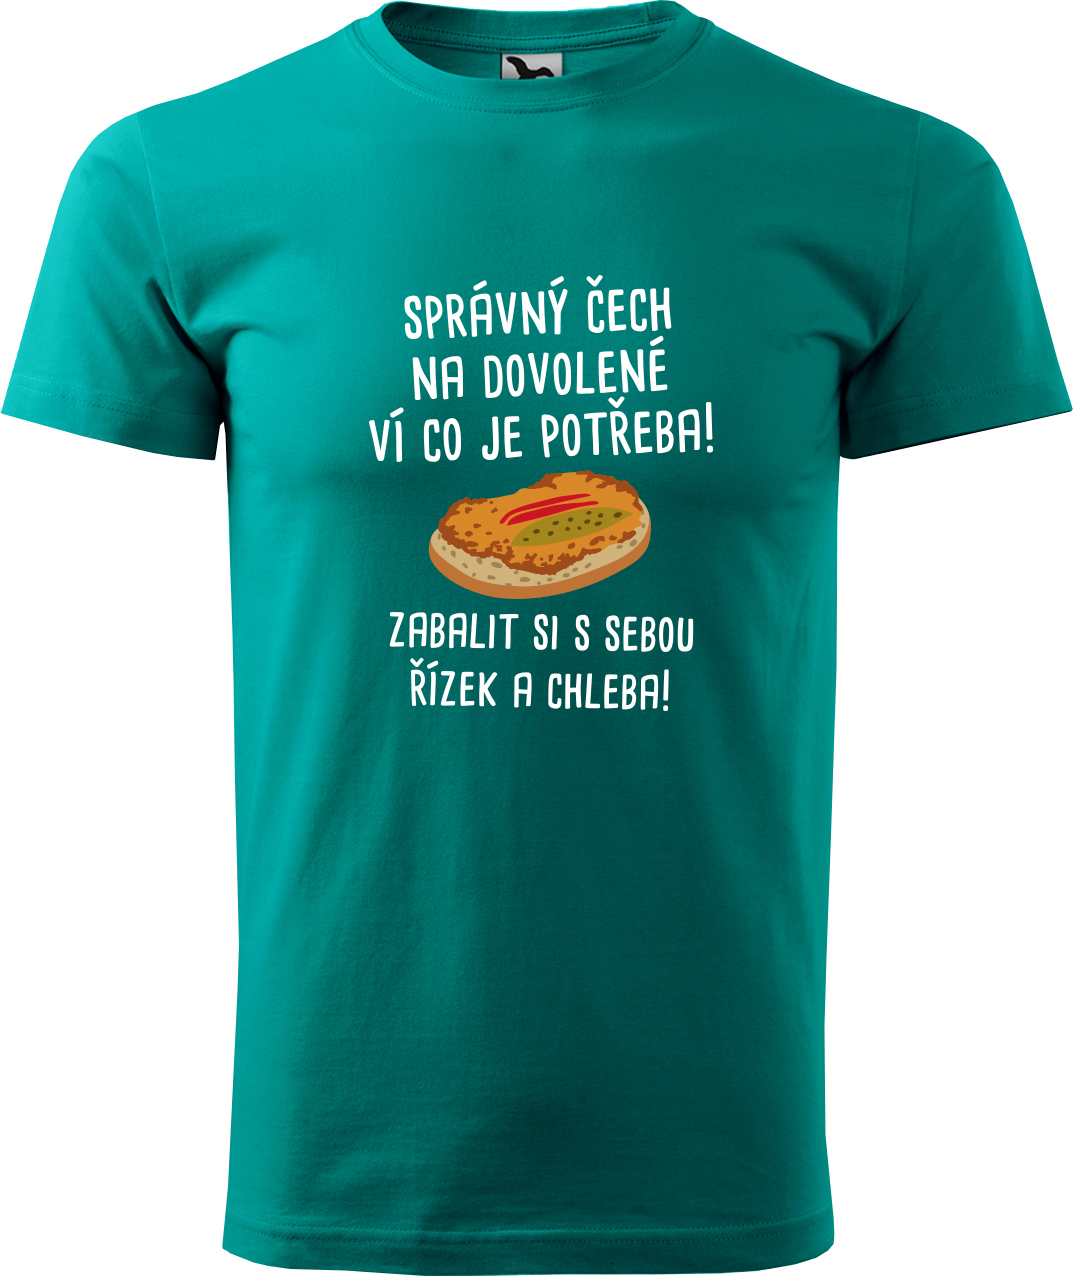 Pánské cestovatelské tričko - Správný Čech na dovolené, ví co je potřeba! Velikost: XL, Barva: Emerald (19), Střih: pánský